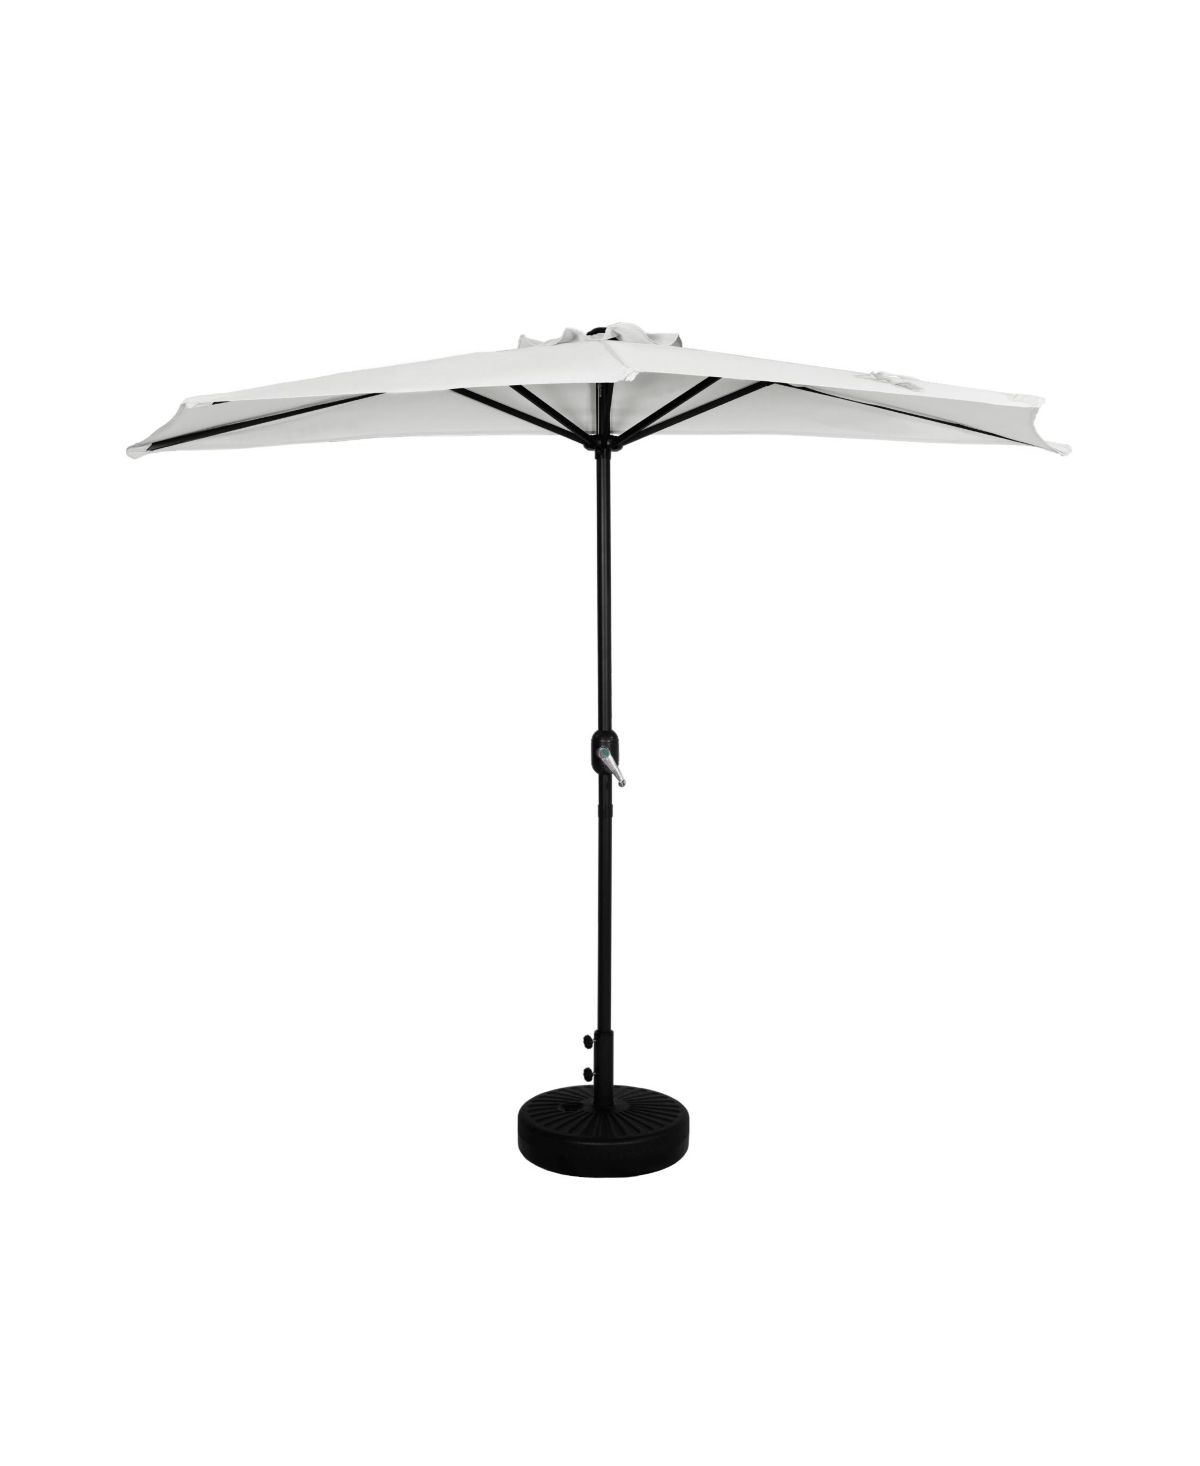 9 Ft Outdoor Half Market Umbrella with Black Round Weight Base Set - Navy blue